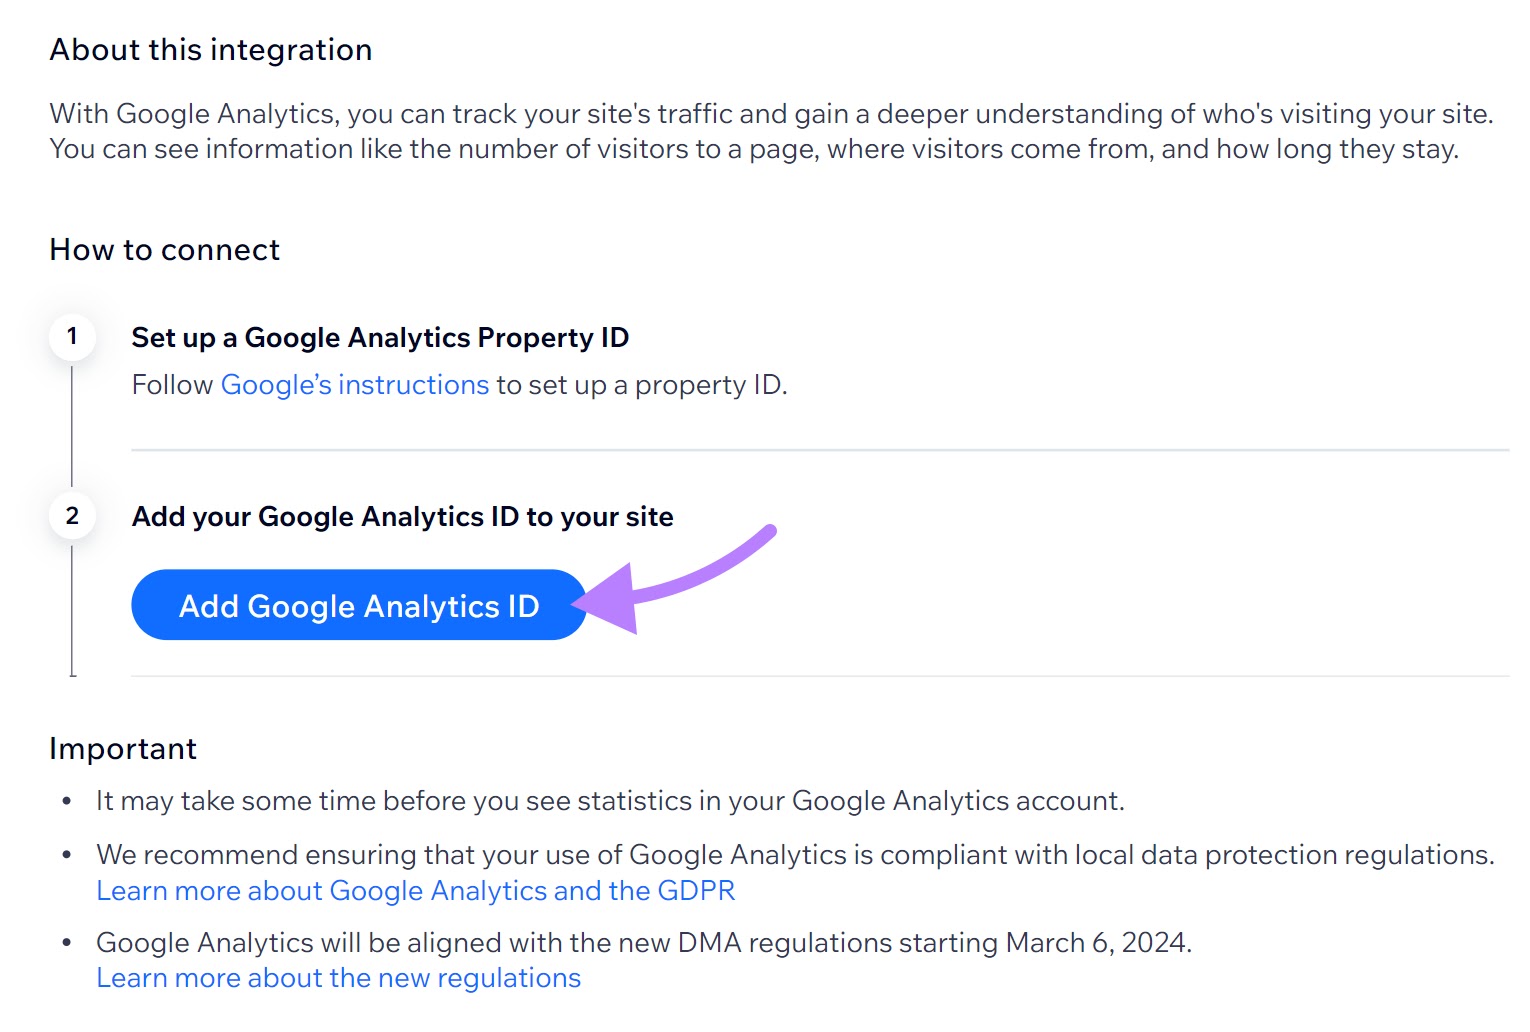 “Add Google Analytics ID” button